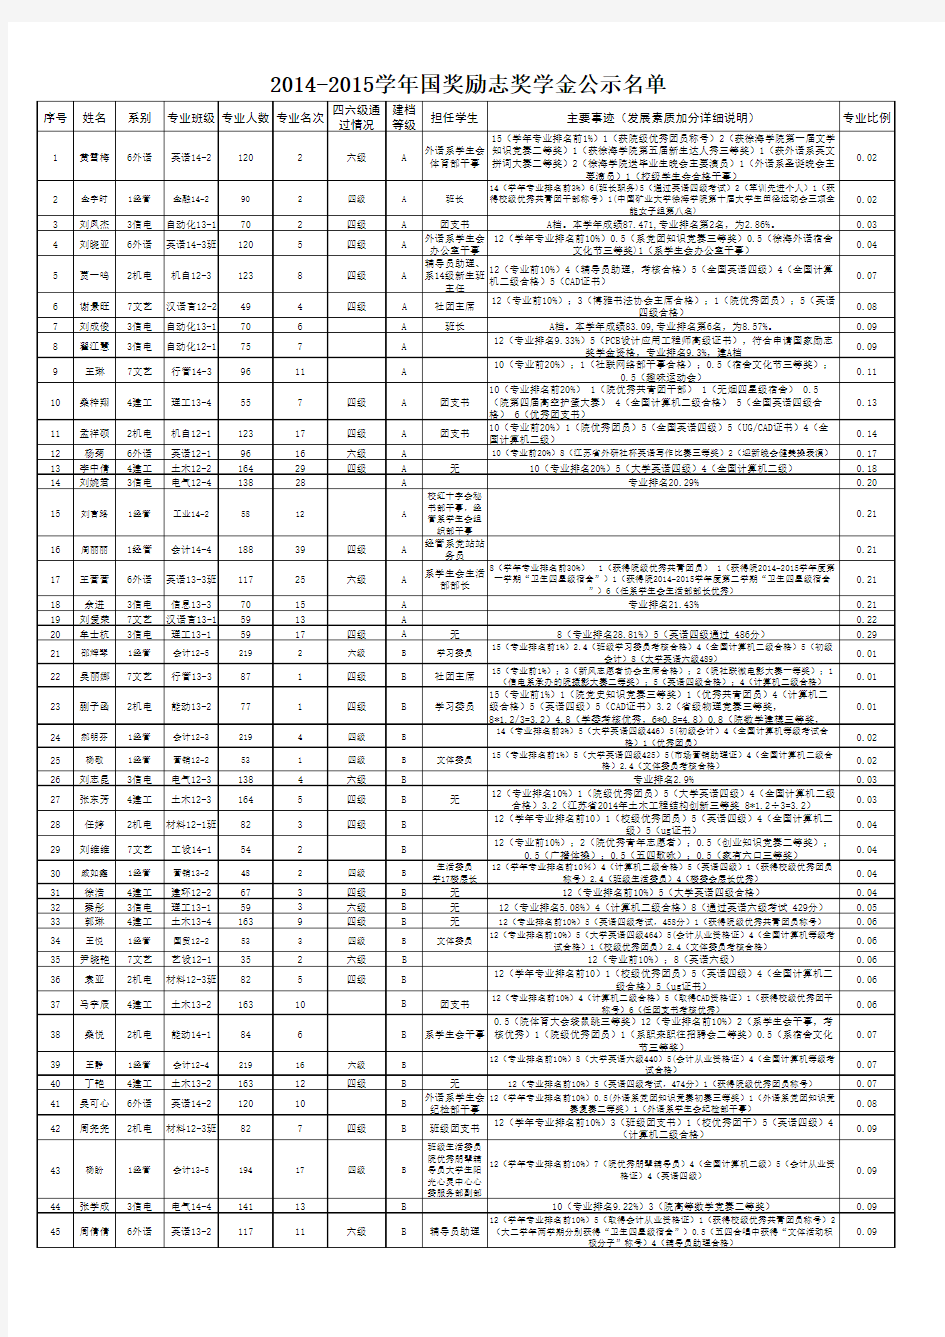 中国矿业大学徐海学院2014-2015学年国奖励志奖学金公示名单